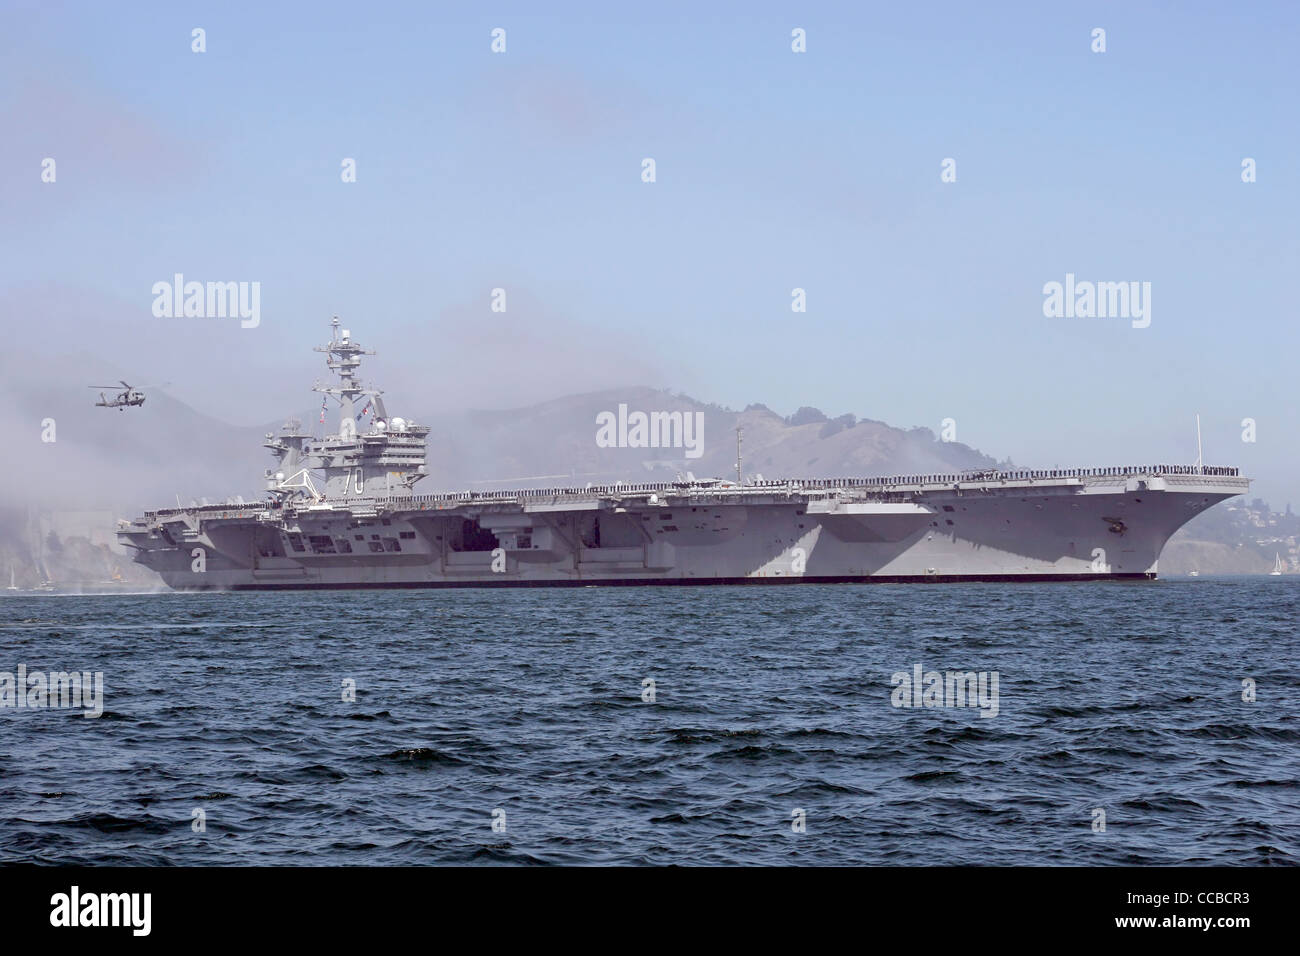 Nimitz class aircraft carrier USS Carl Vinson (CVN 70) enters San Francisco Bay. Stock Photo